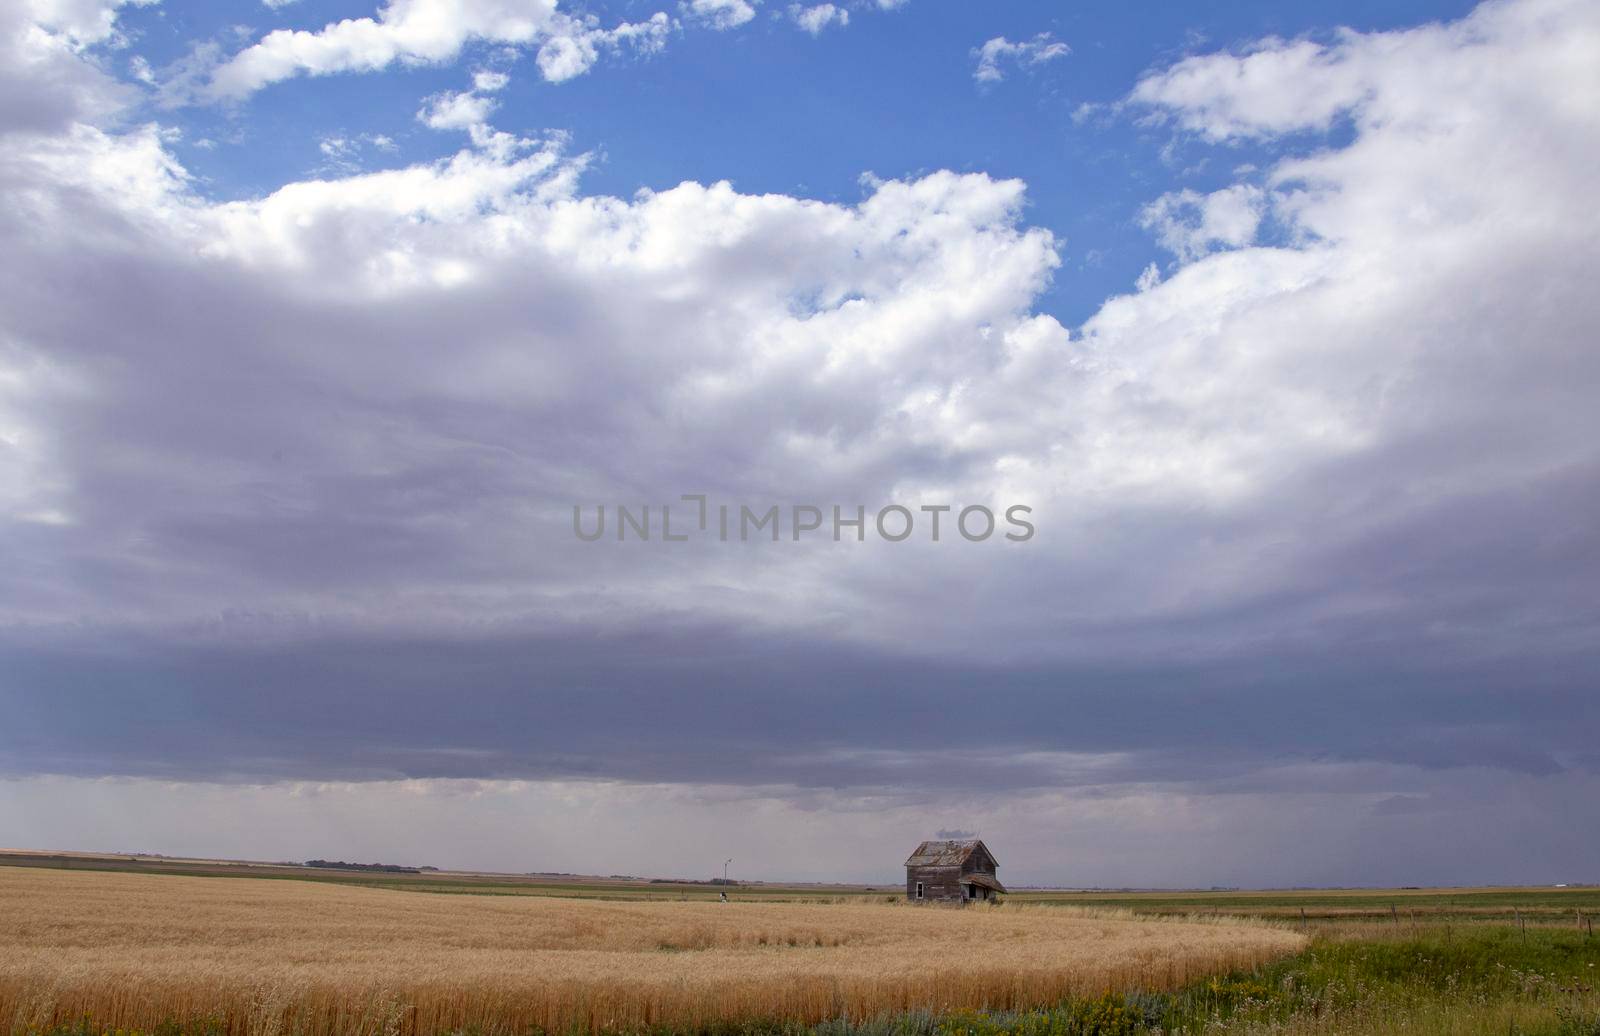 Ominous Storm Clouds Prairie Summer Rural Scene